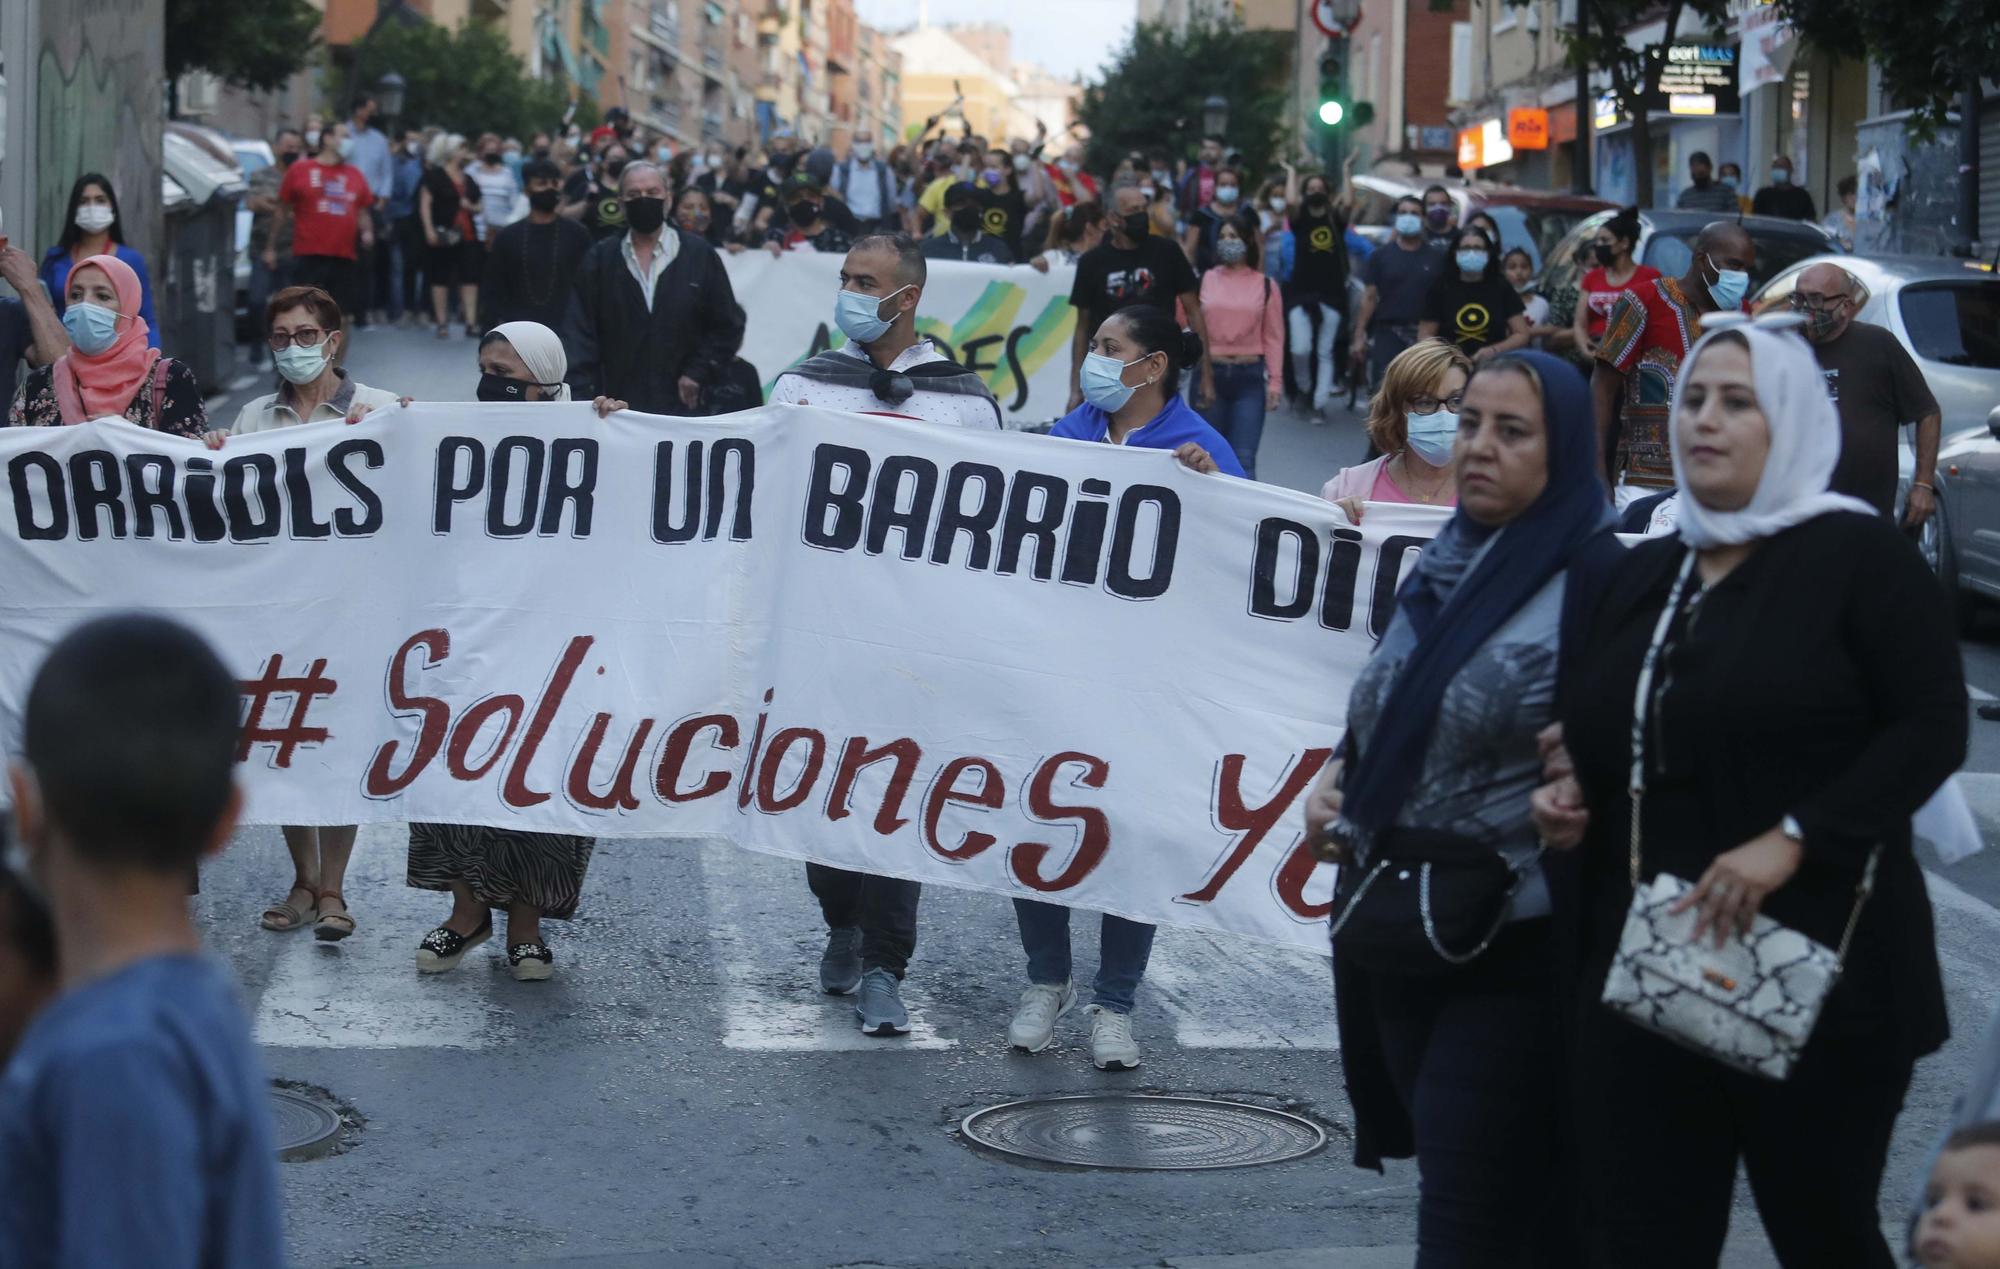 Orriols dice basta a la inseguridad en sus calles